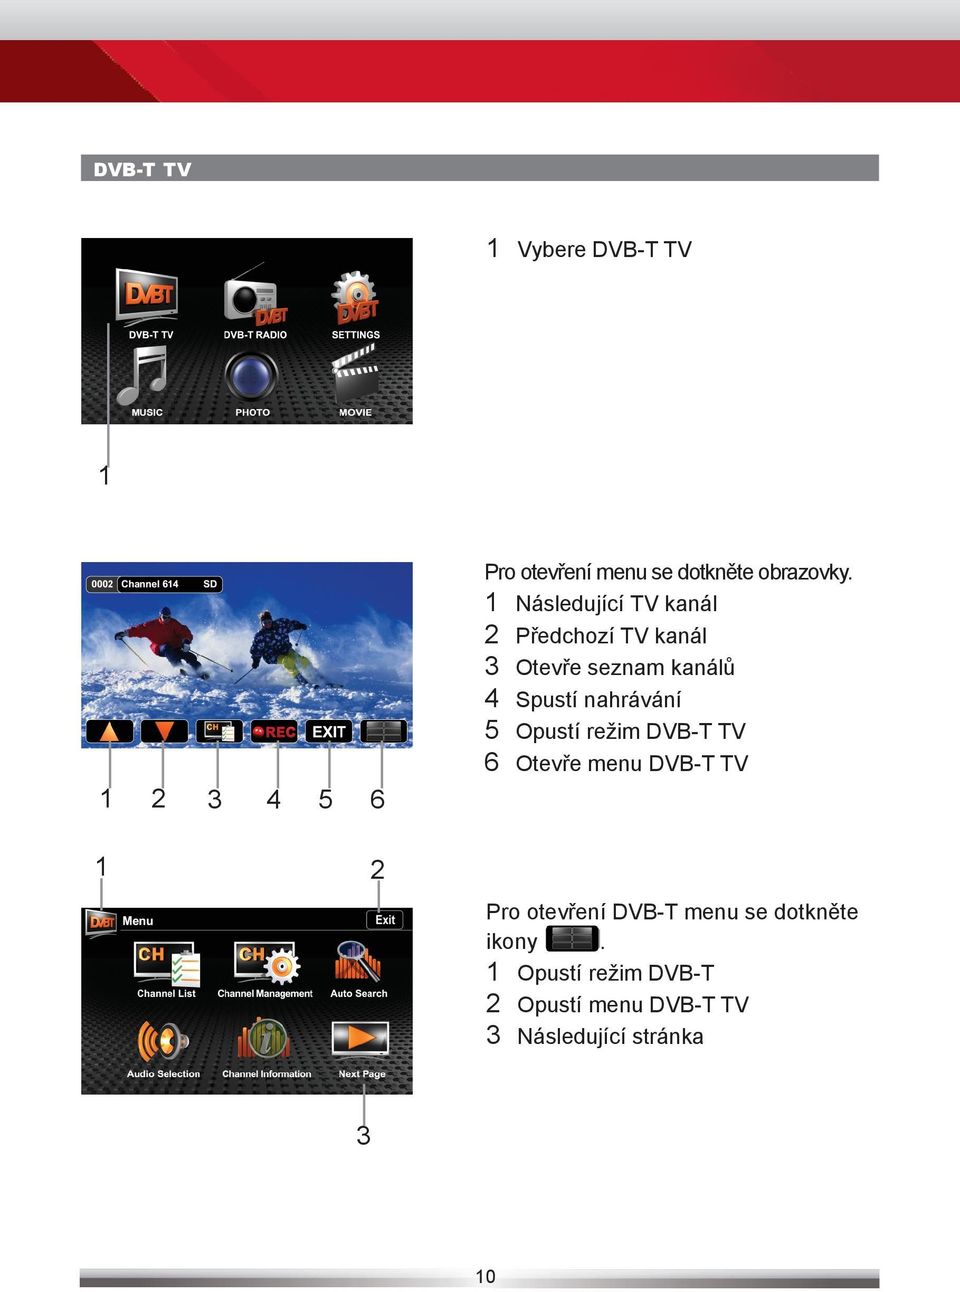 nahrávání 5 Opustí režim DVB-T TV 6 Otevře menu DVB-T TV 1 2 Pro otevření DVB-T